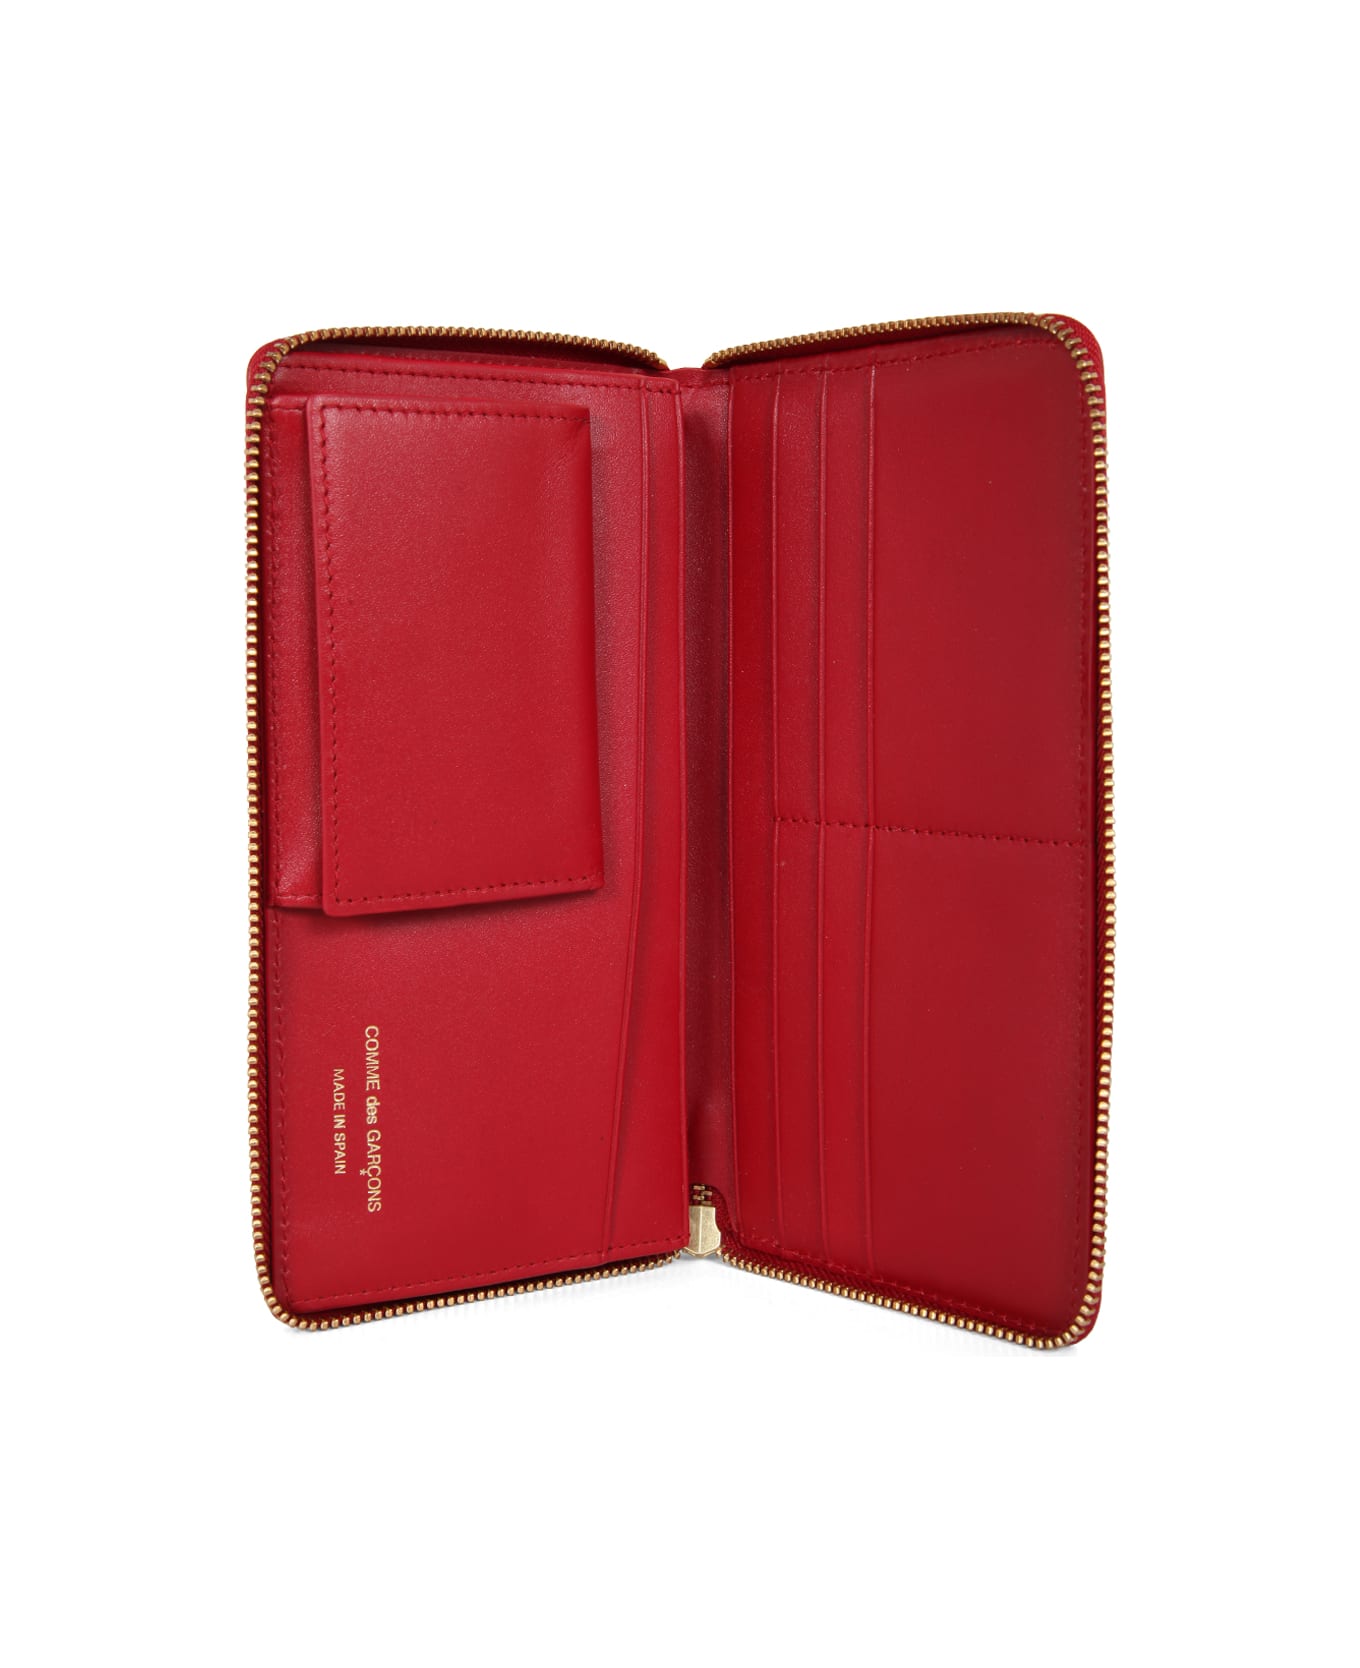 Comme des Garçons Wallet Classic Line Wallet - Red Red 財布